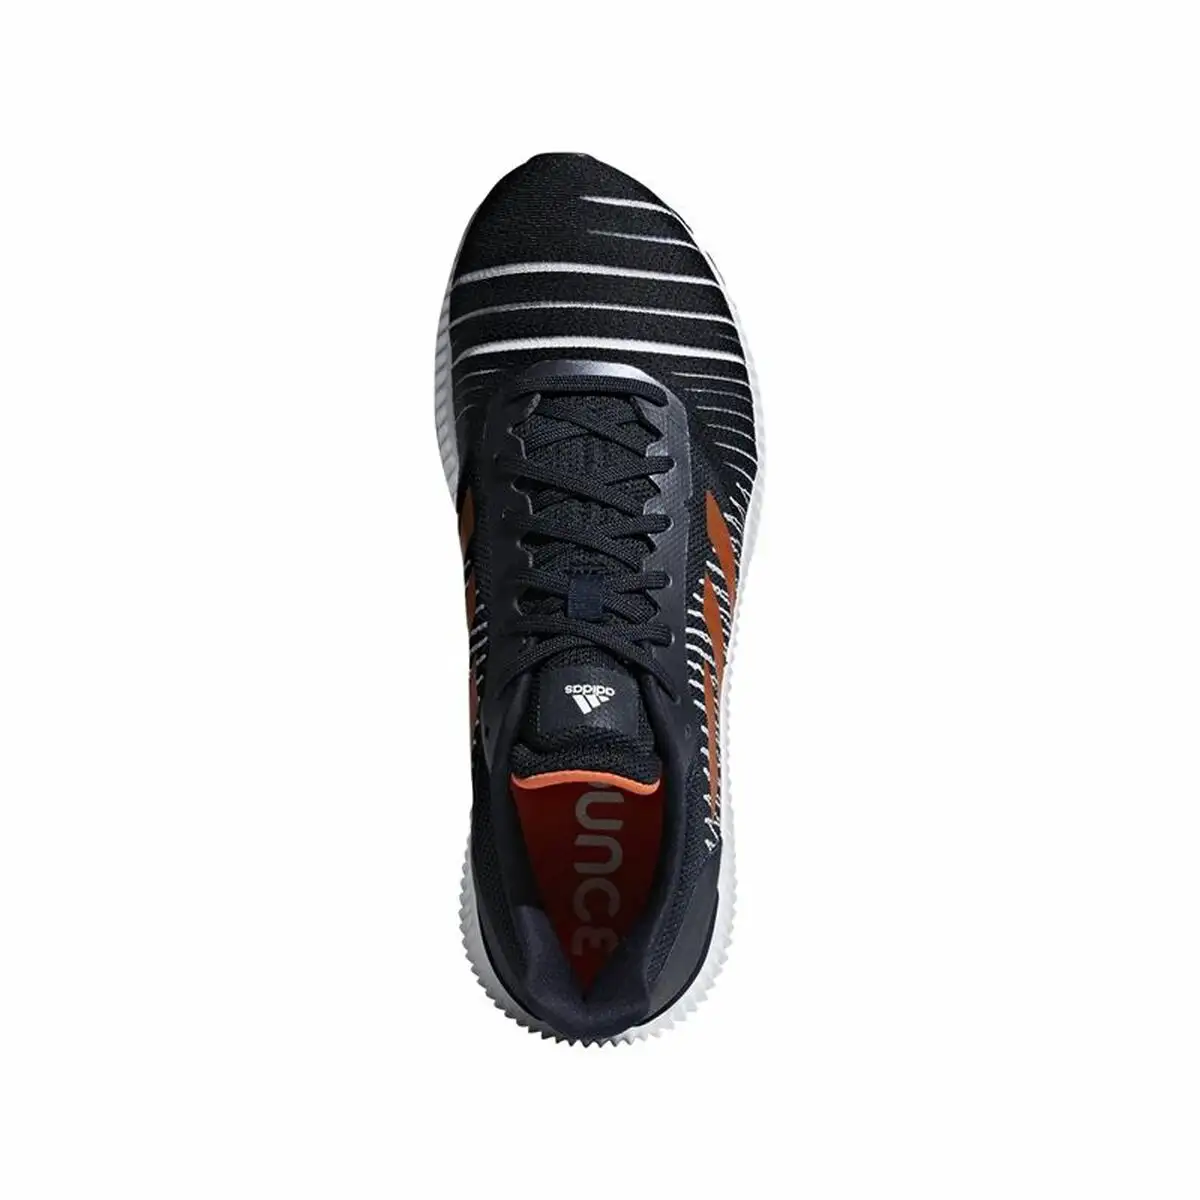 Chaussures de running pour adultes adidas solar ride noir_8579. Bienvenue chez DIAYTAR SENEGAL - Votre Plateforme Shopping pour Tous. Découvrez un large éventail de produits qui célèbrent la diversité et la beauté du Sénégal.